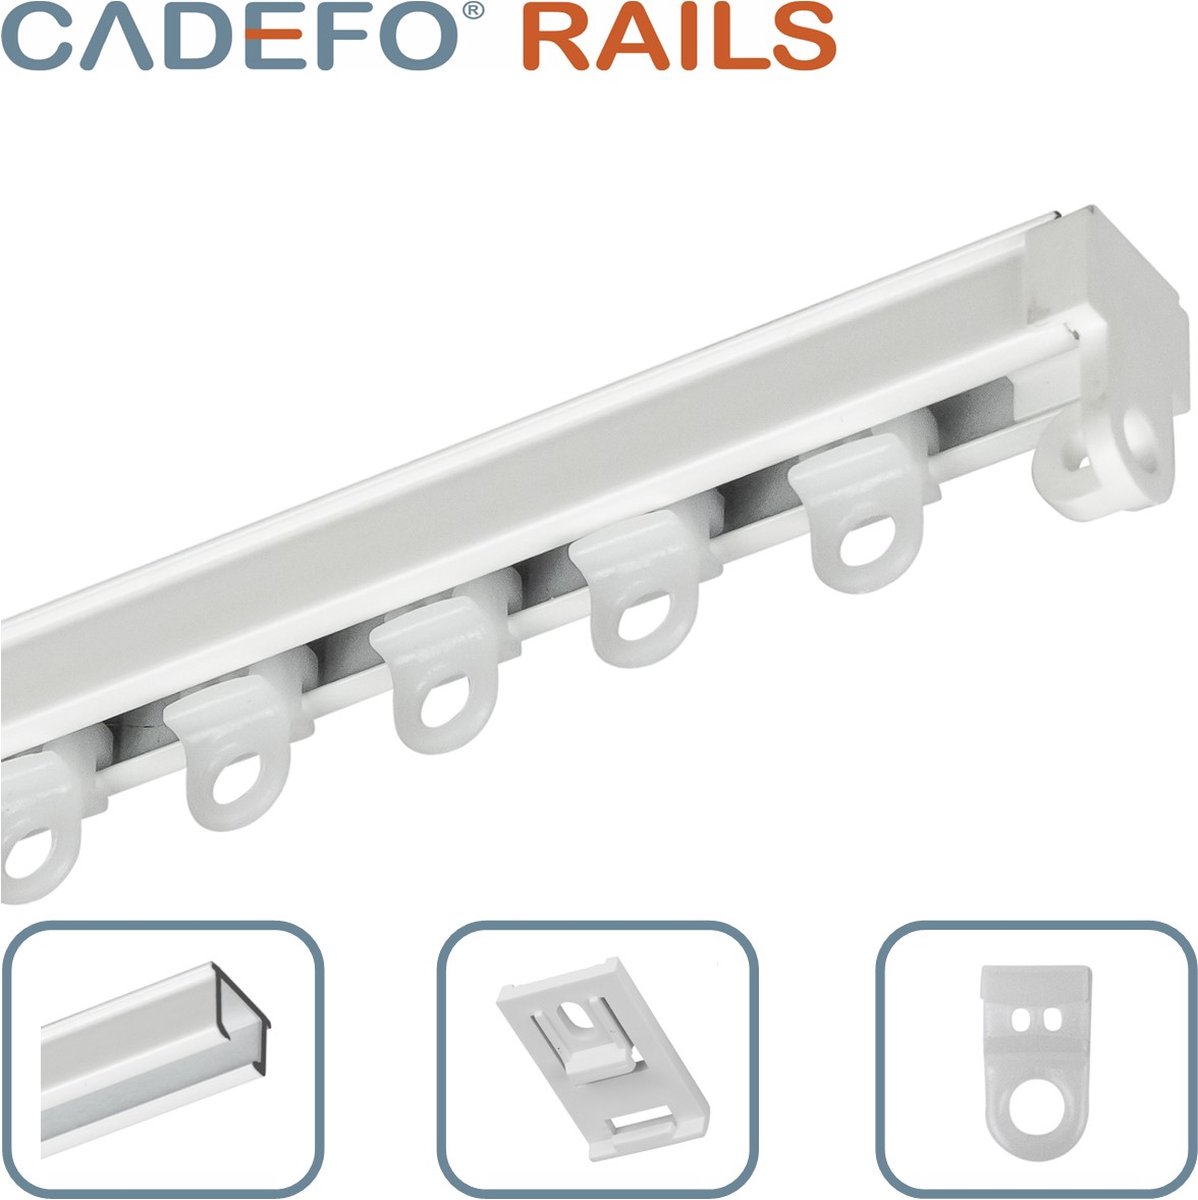 CADEFO RAILS (301 - 350 cm) Gordijnrails - Compleet op maat! - UIT 1 STUK - Leverbaar tot 6 meter - Plafondbevestiging - Lengte 320 cm